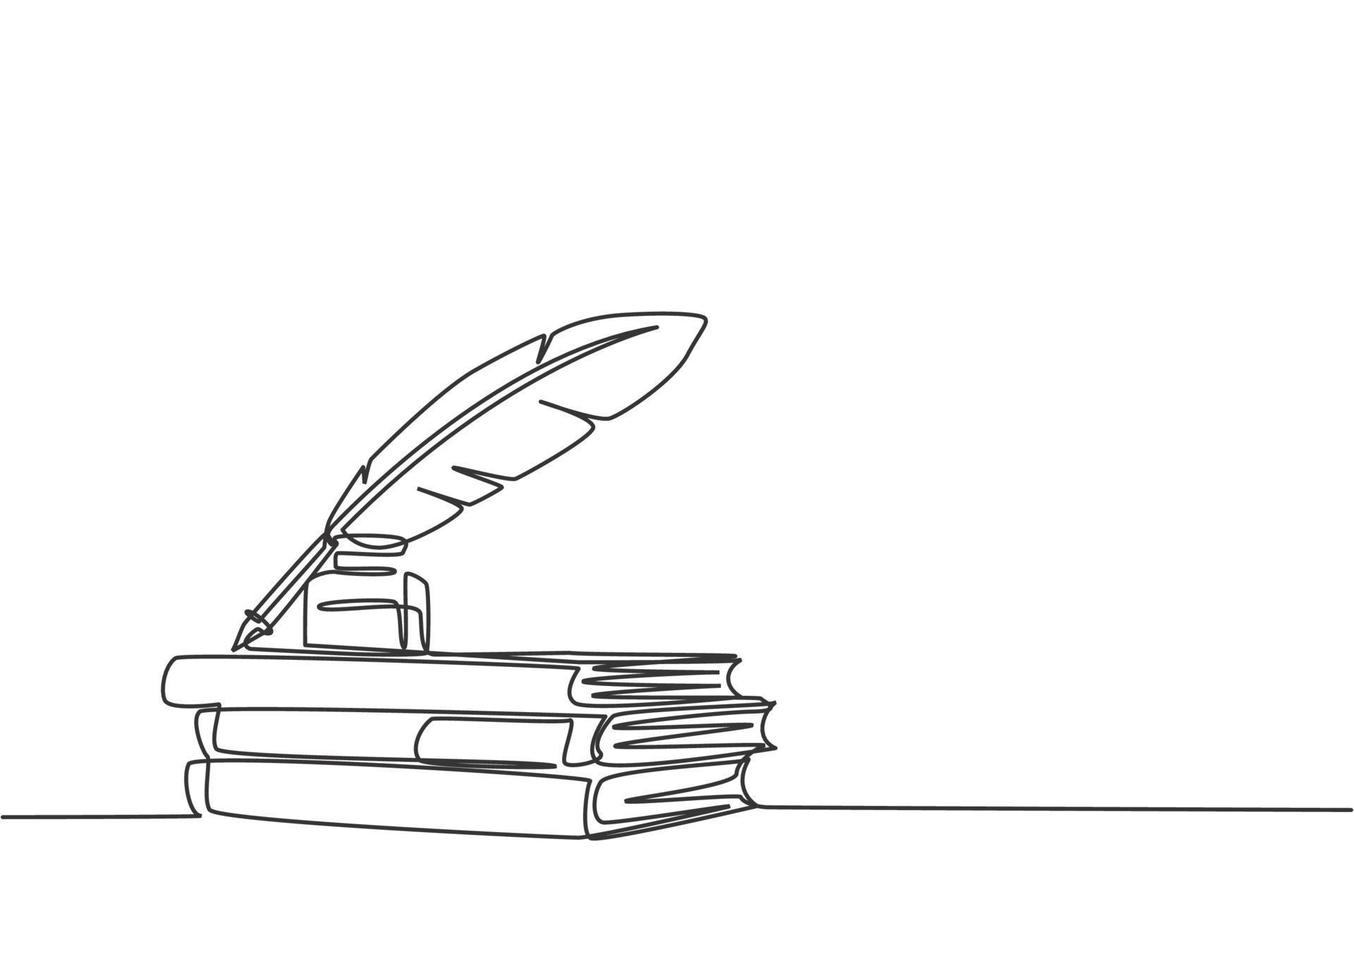 un dibujo de línea continua de una pila de libros, tinta y pluma en el escritorio de la oficina. Ilustración de vector de diseño de dibujo de línea única concepto de equipo de escritura vintage